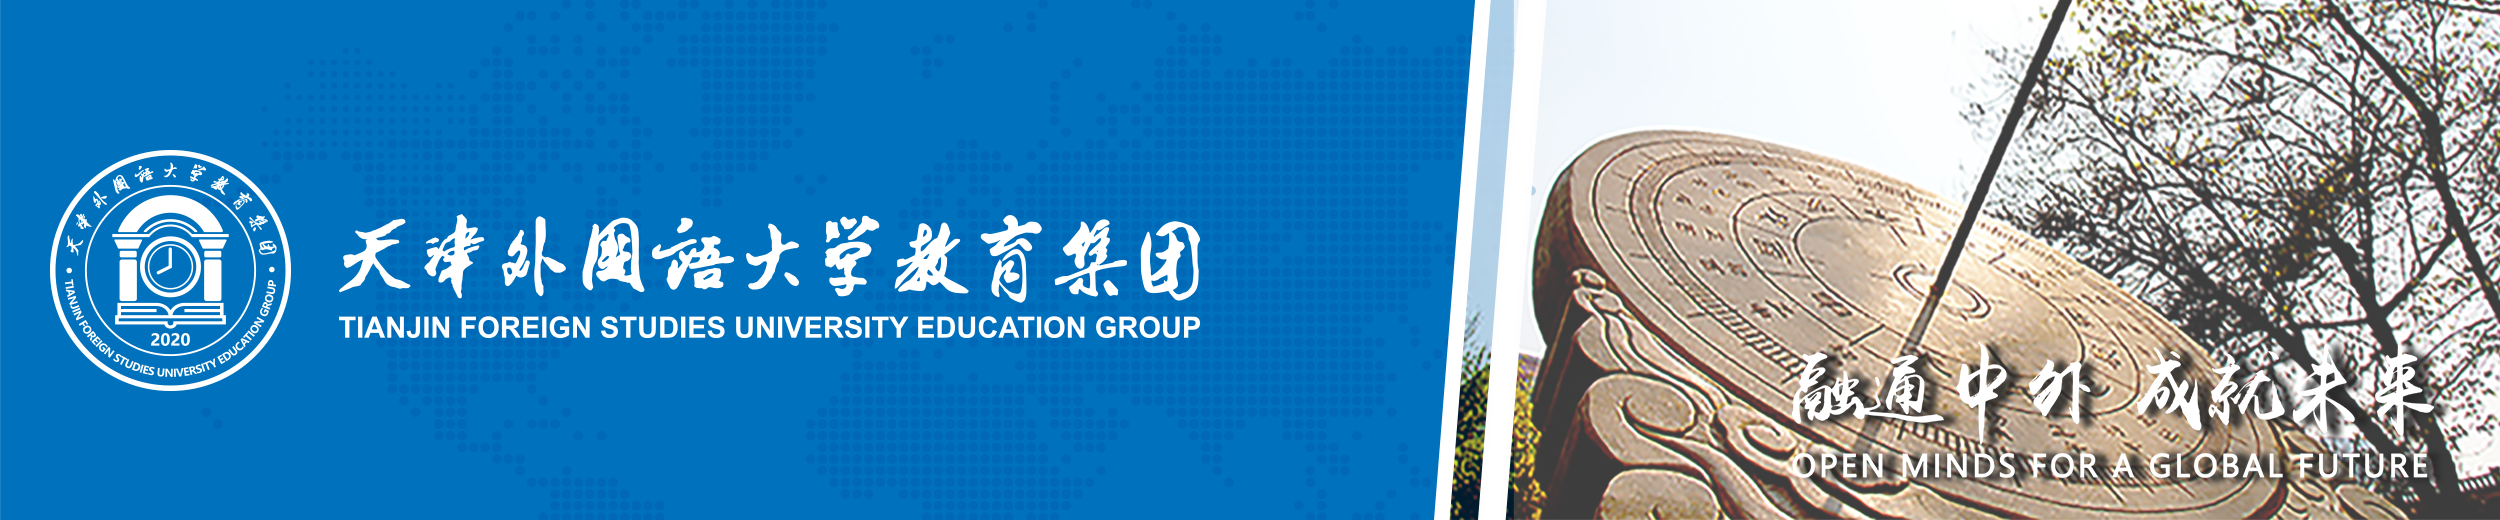 天津外国语大学教育集团网站